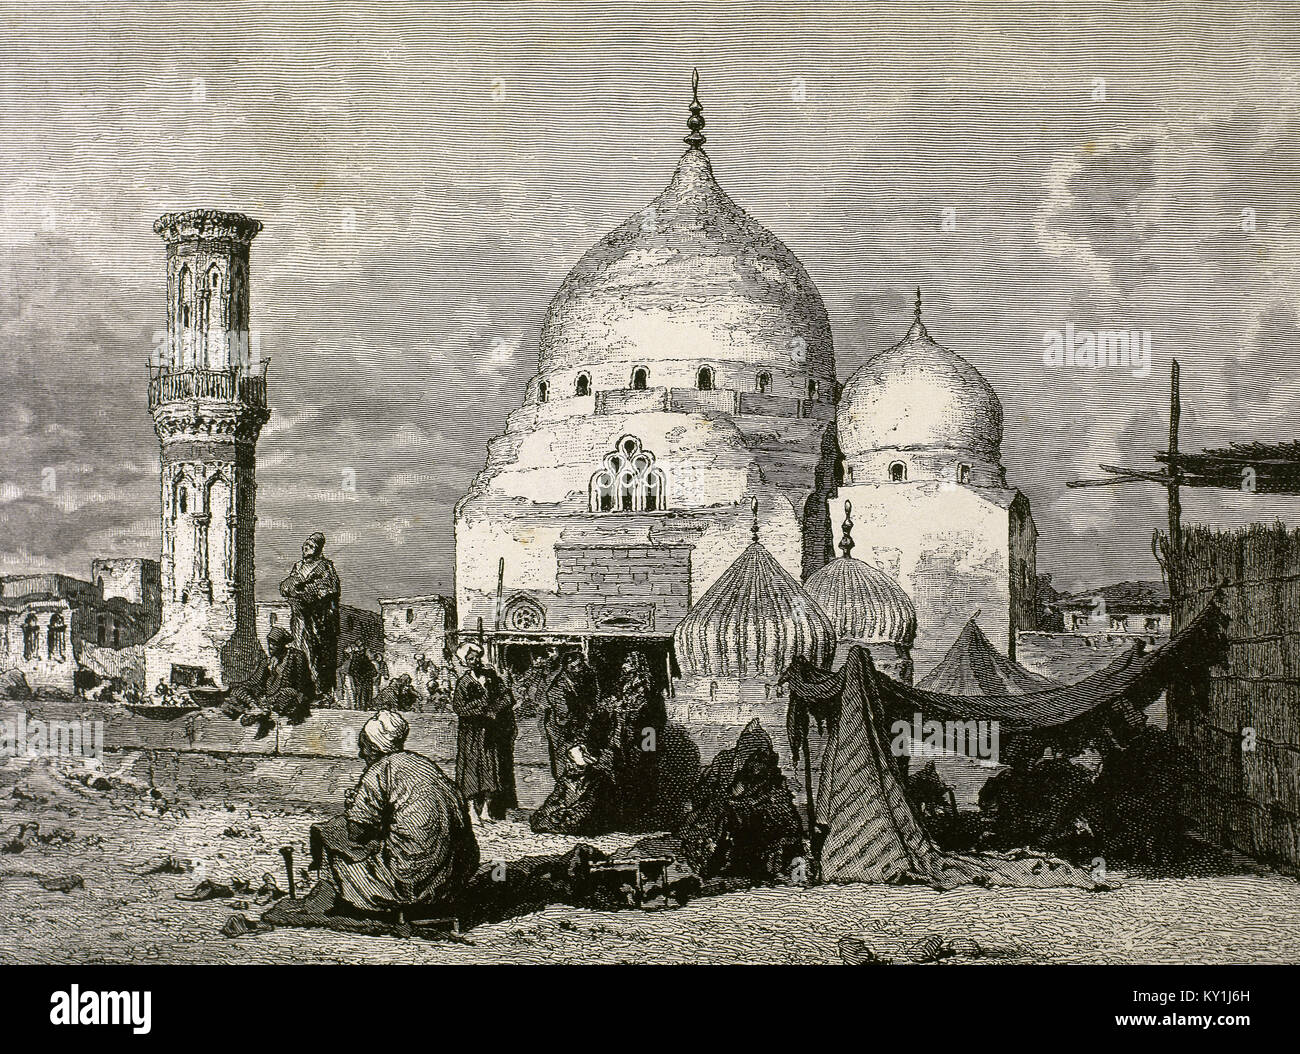 Egypt. Desouk. El Ibrahimi Mosque. Engraving. 19th century. Stock Photo